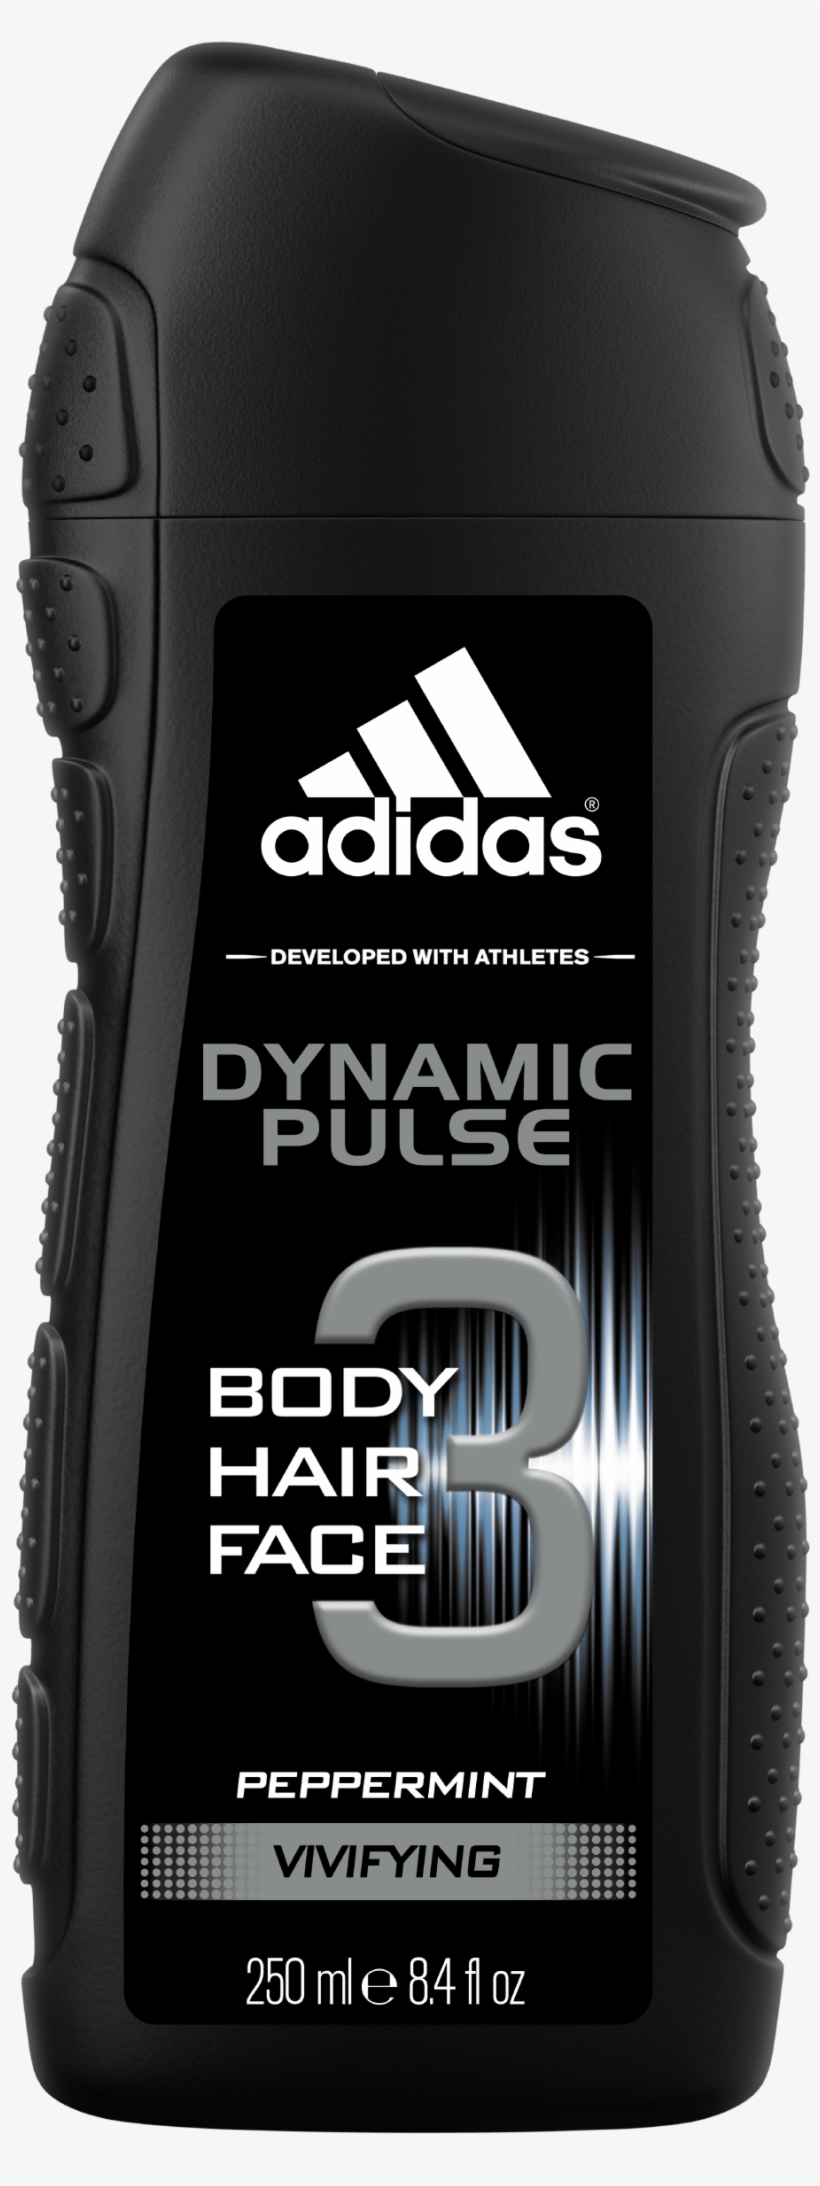 adidas dynamic pulse body wash